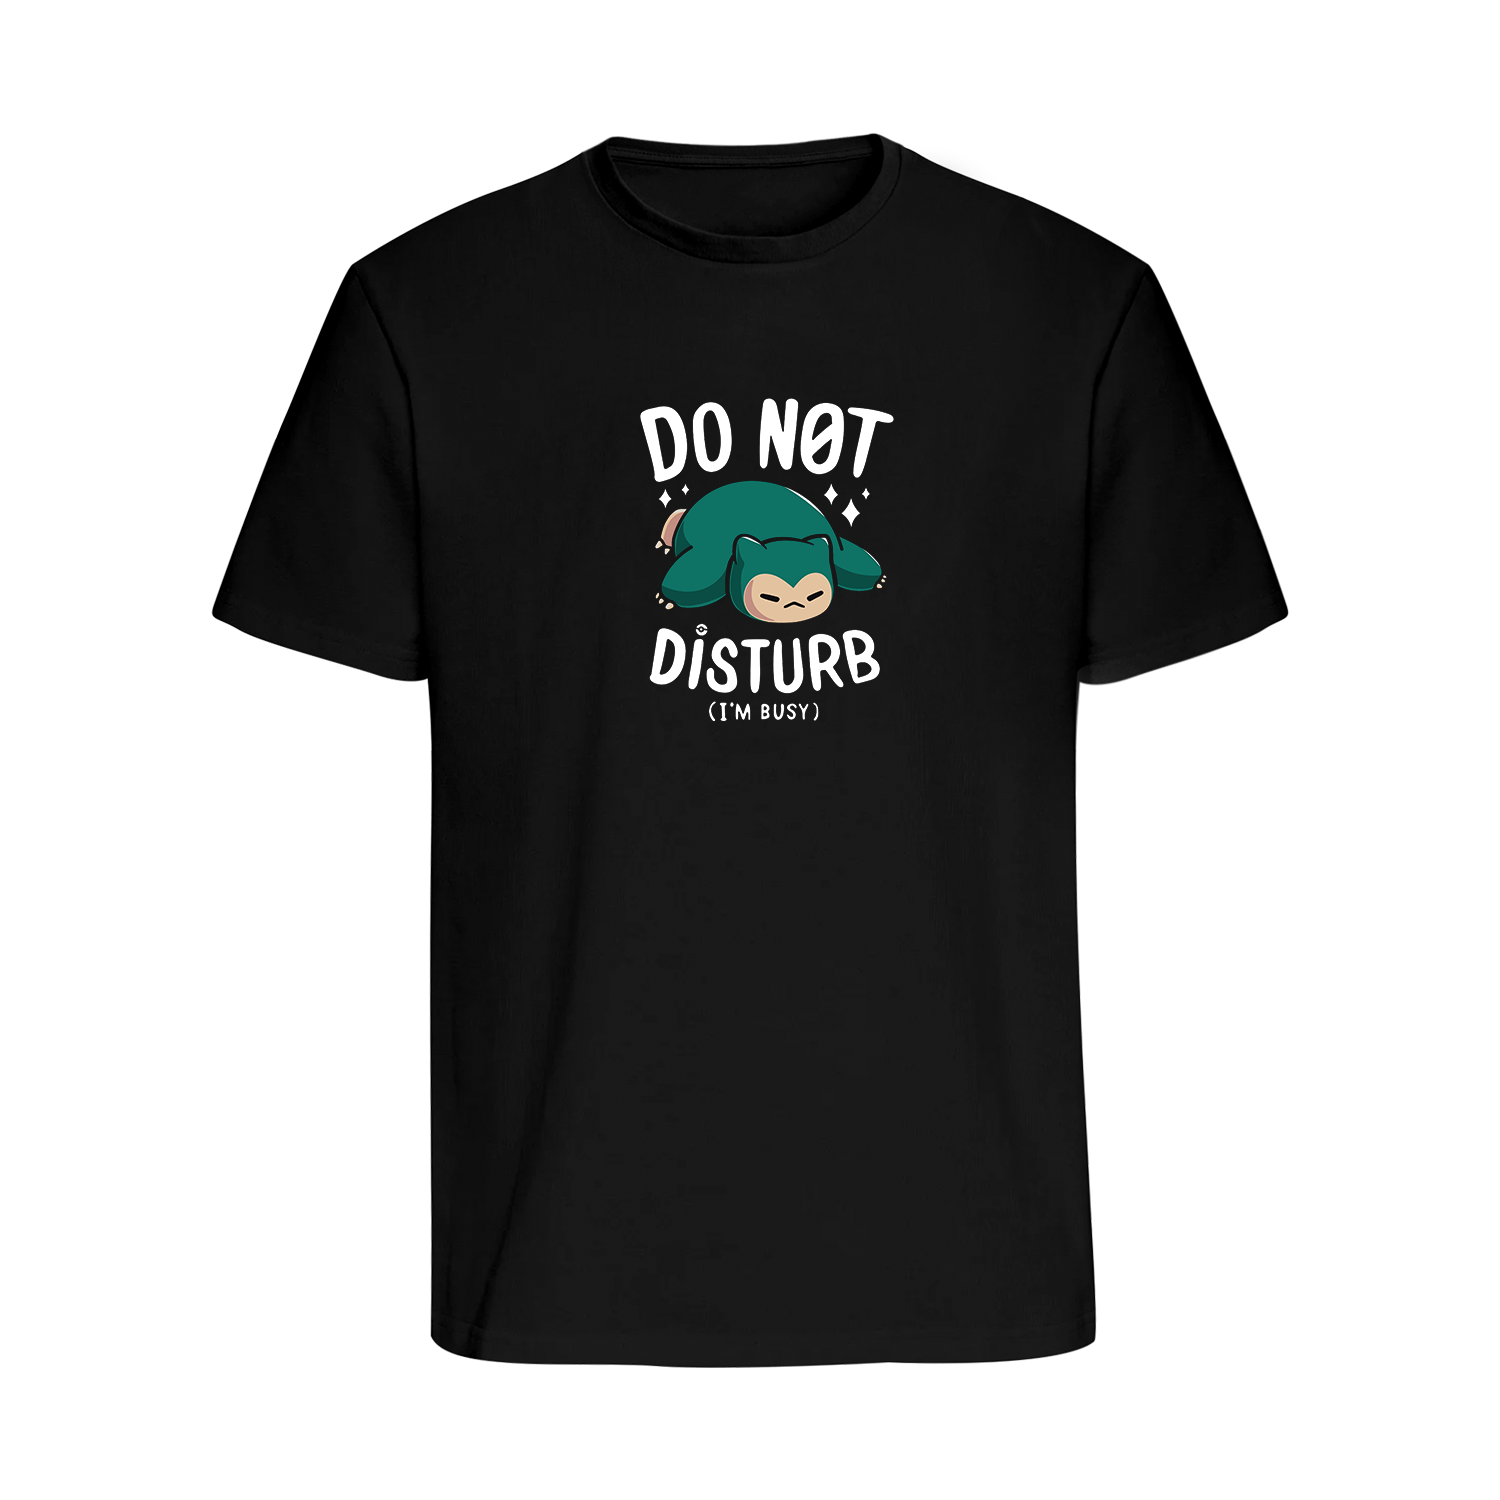 DO NOT DISTURB - Regular T-Shirt